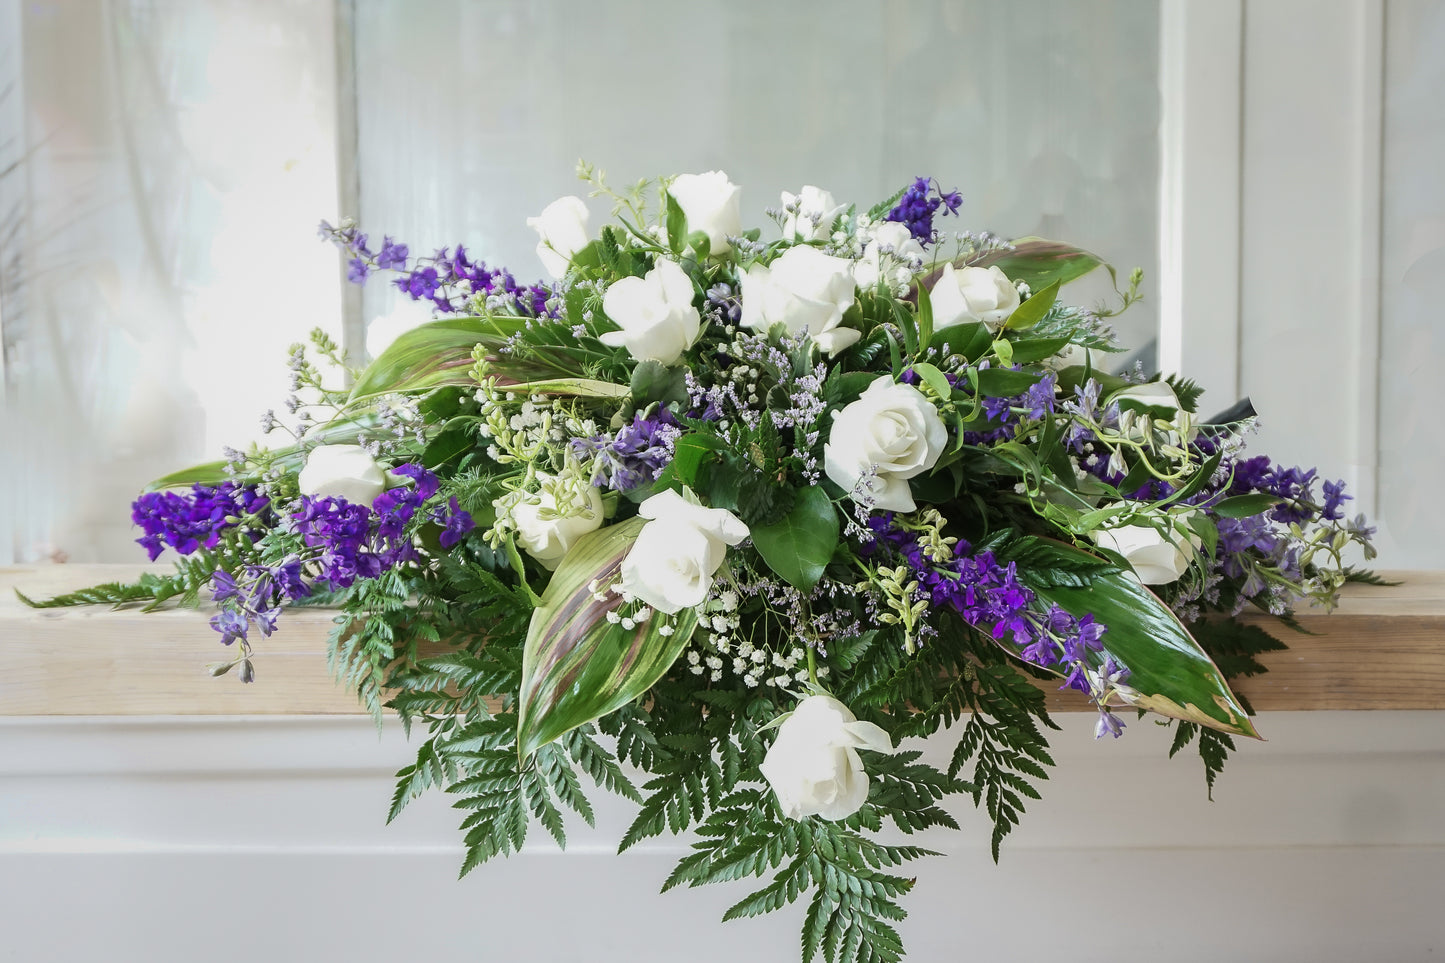 jolie coussin composé de delphiniums mauves et roses blanches ainsi que du delphiniums mauves